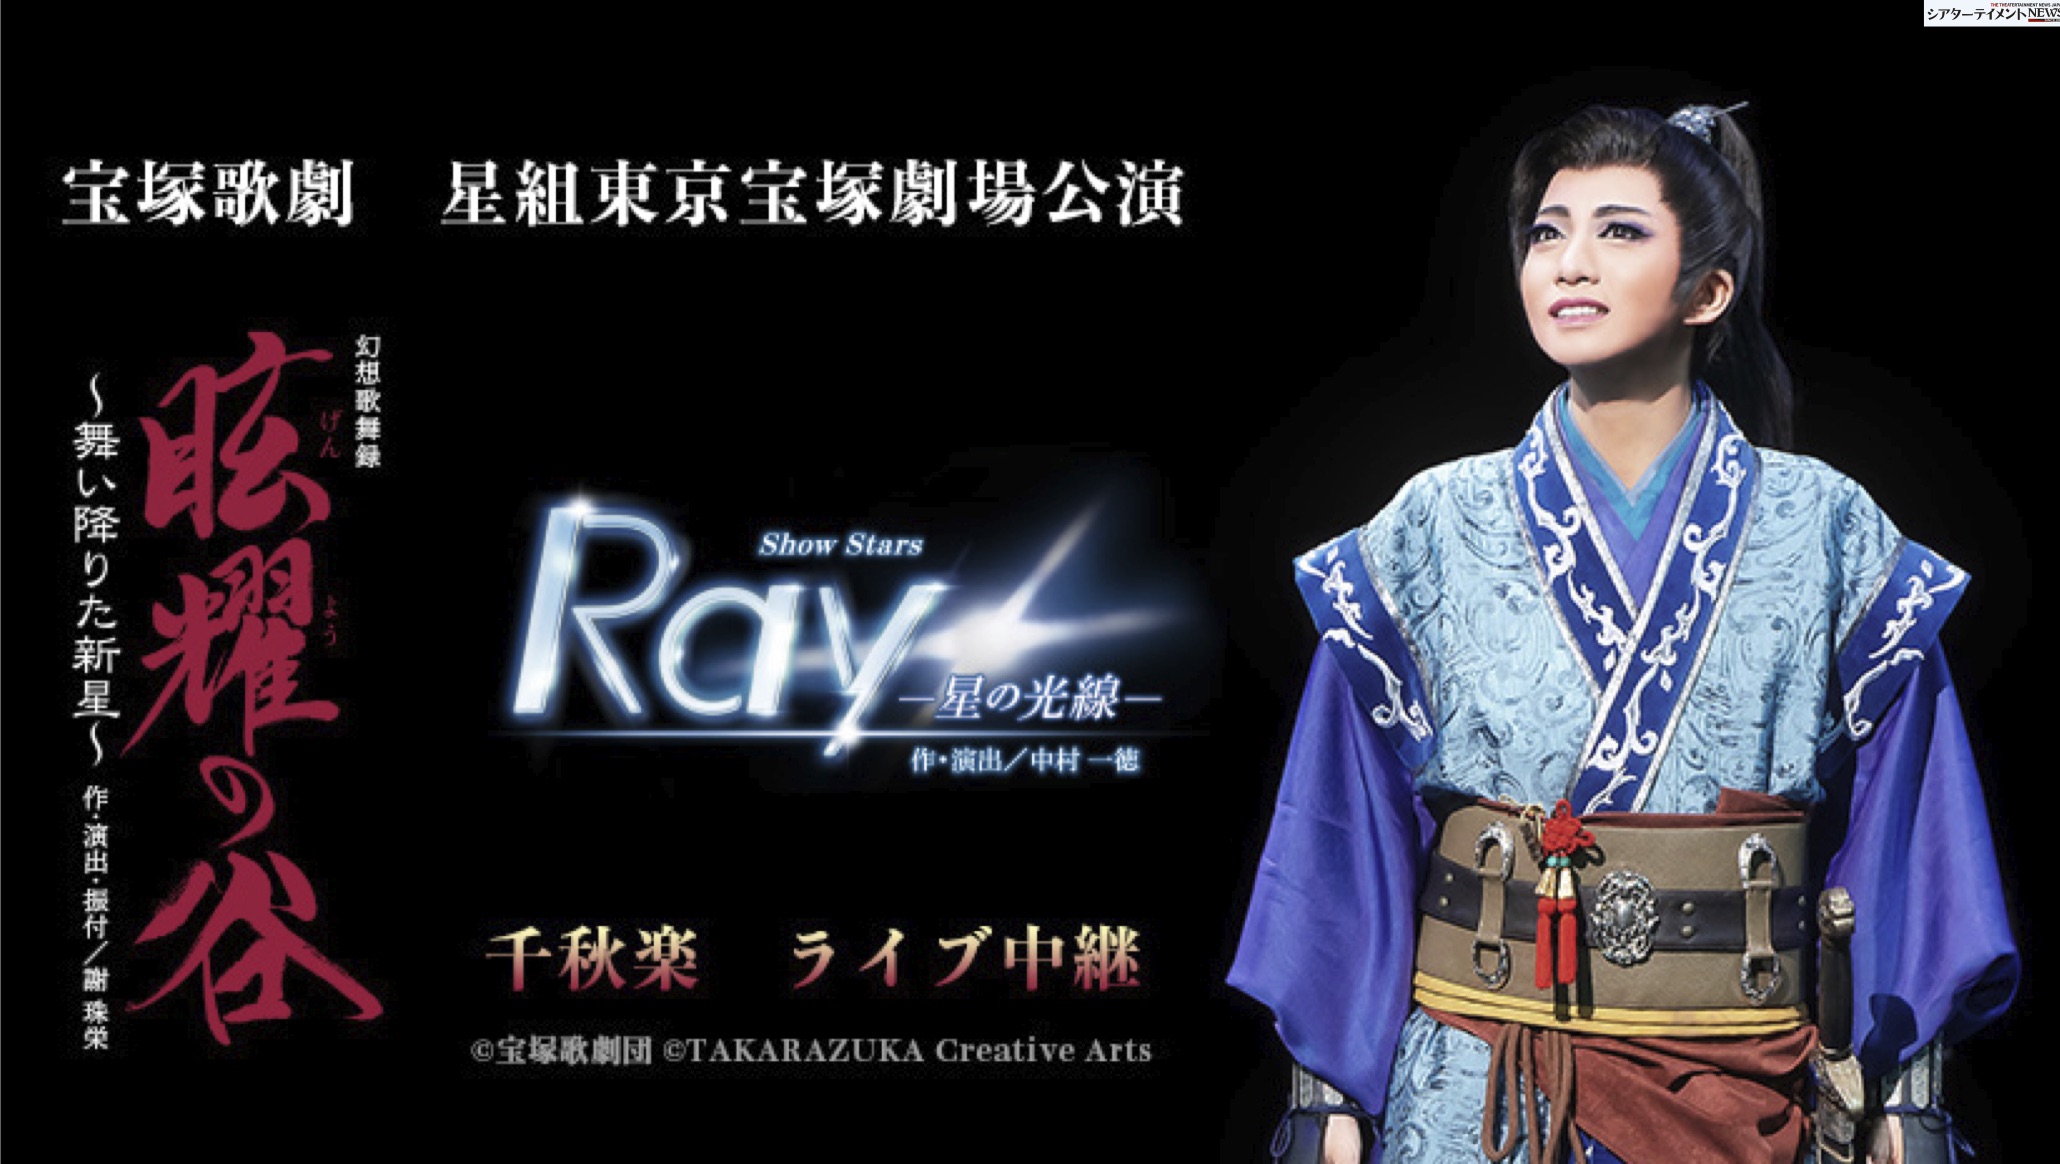 星組 宝塚大劇場公演 眩耀(げんよう)の谷～舞い降りた新星～/Ray-星の光線-